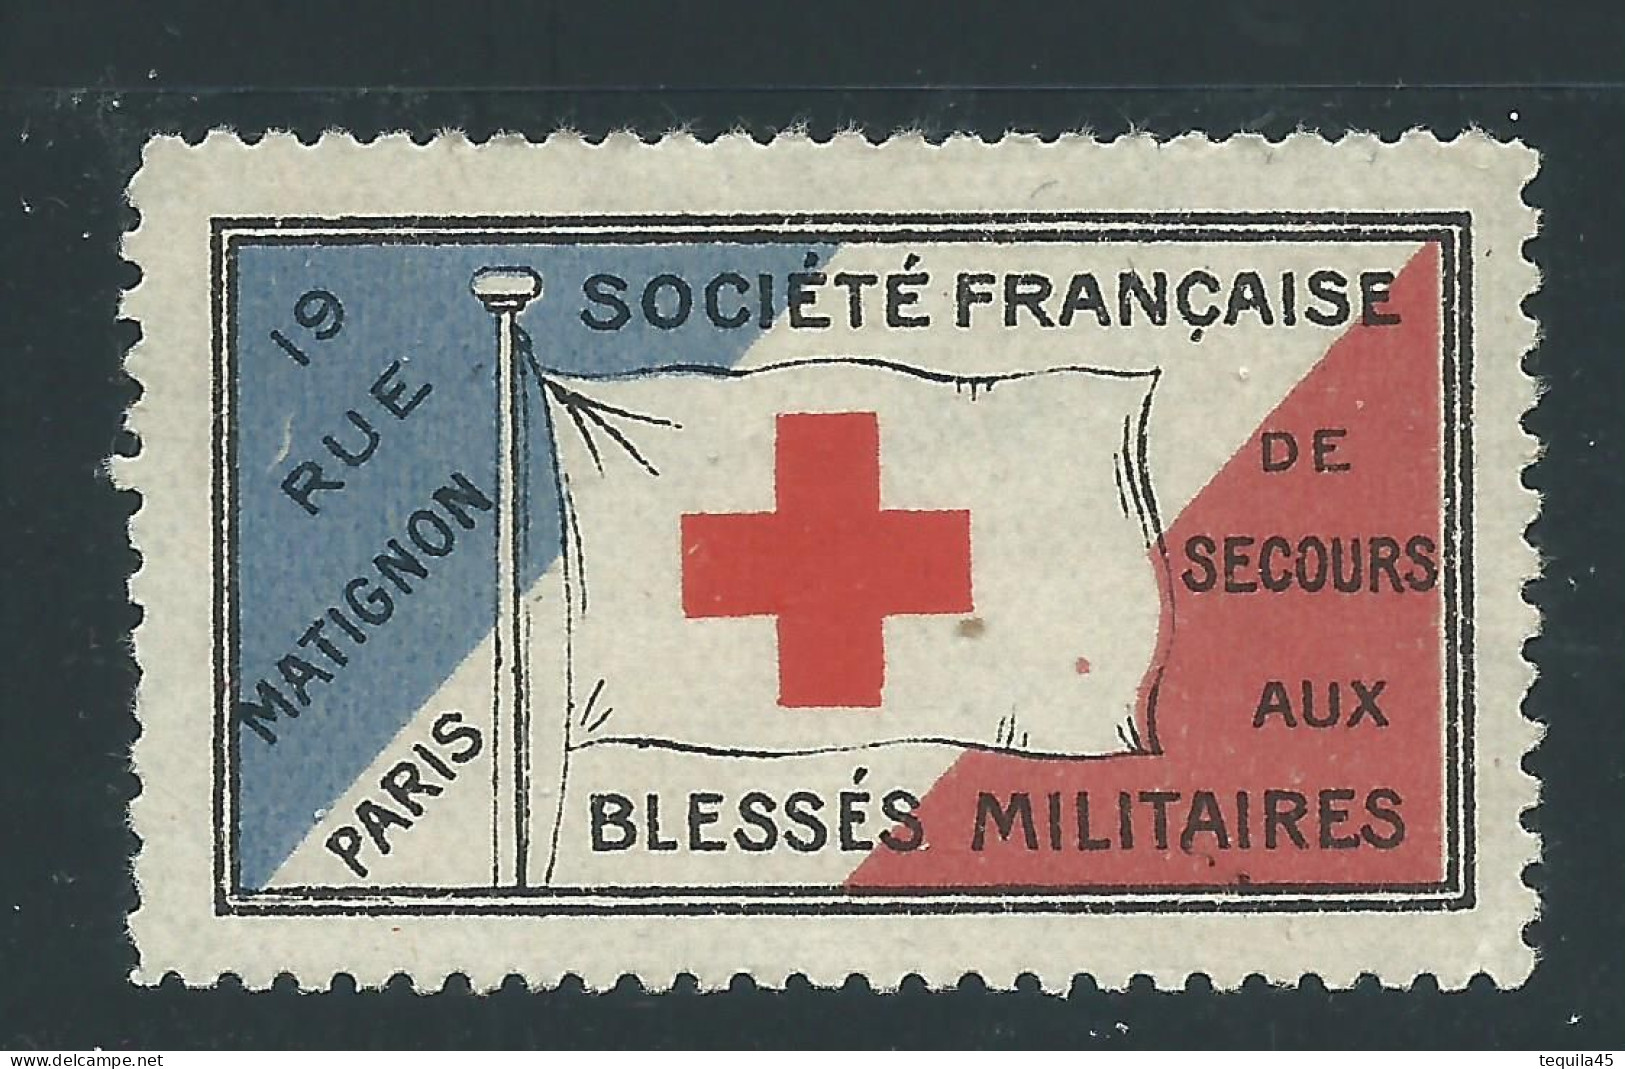 VIGNETTE DELANDRE - Secours Blessés Militaires - France - WWI WW1 Cinderella Poster Stamp Grande Guerre 1914 1918 - Cruz Roja